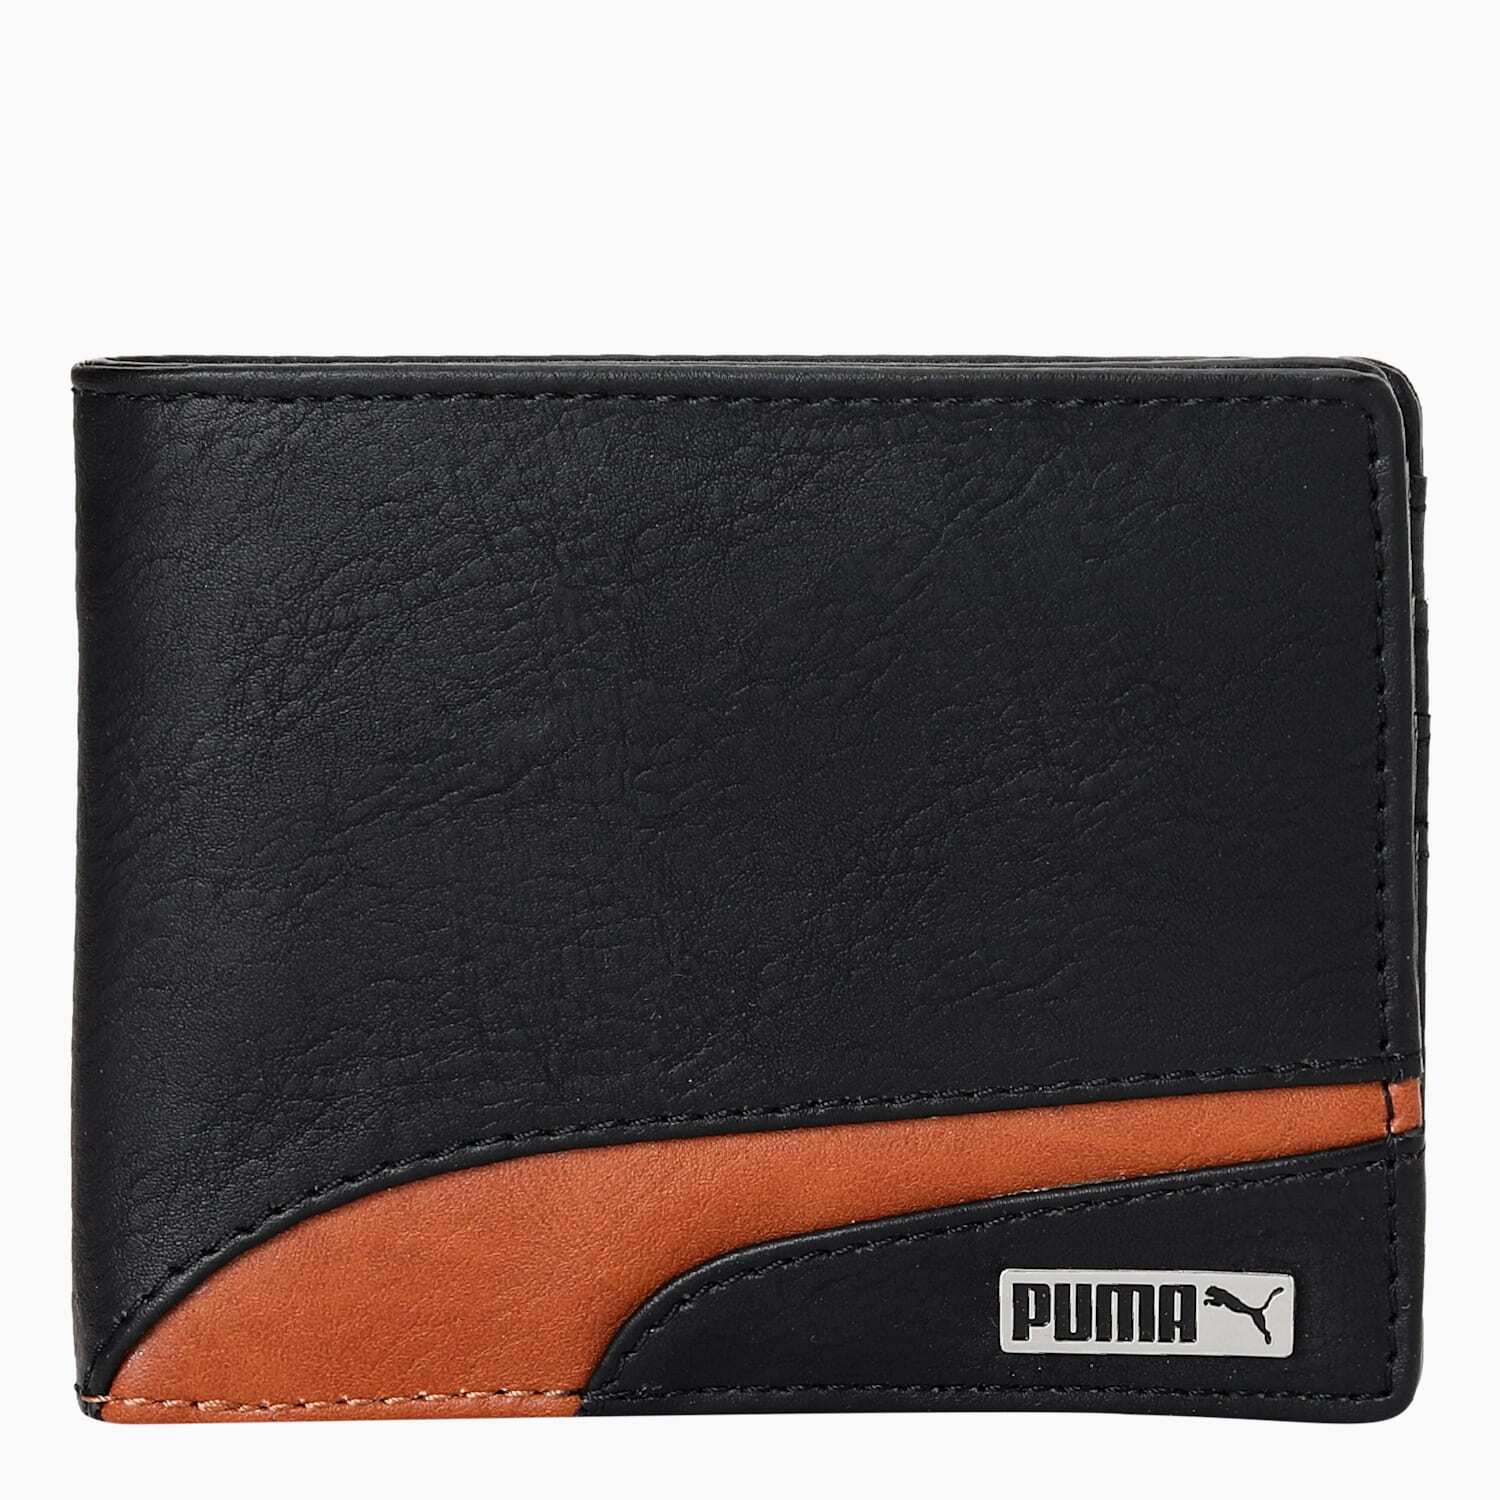 Buy PUMA Ess Tri-Fold Wallet at Redfynd